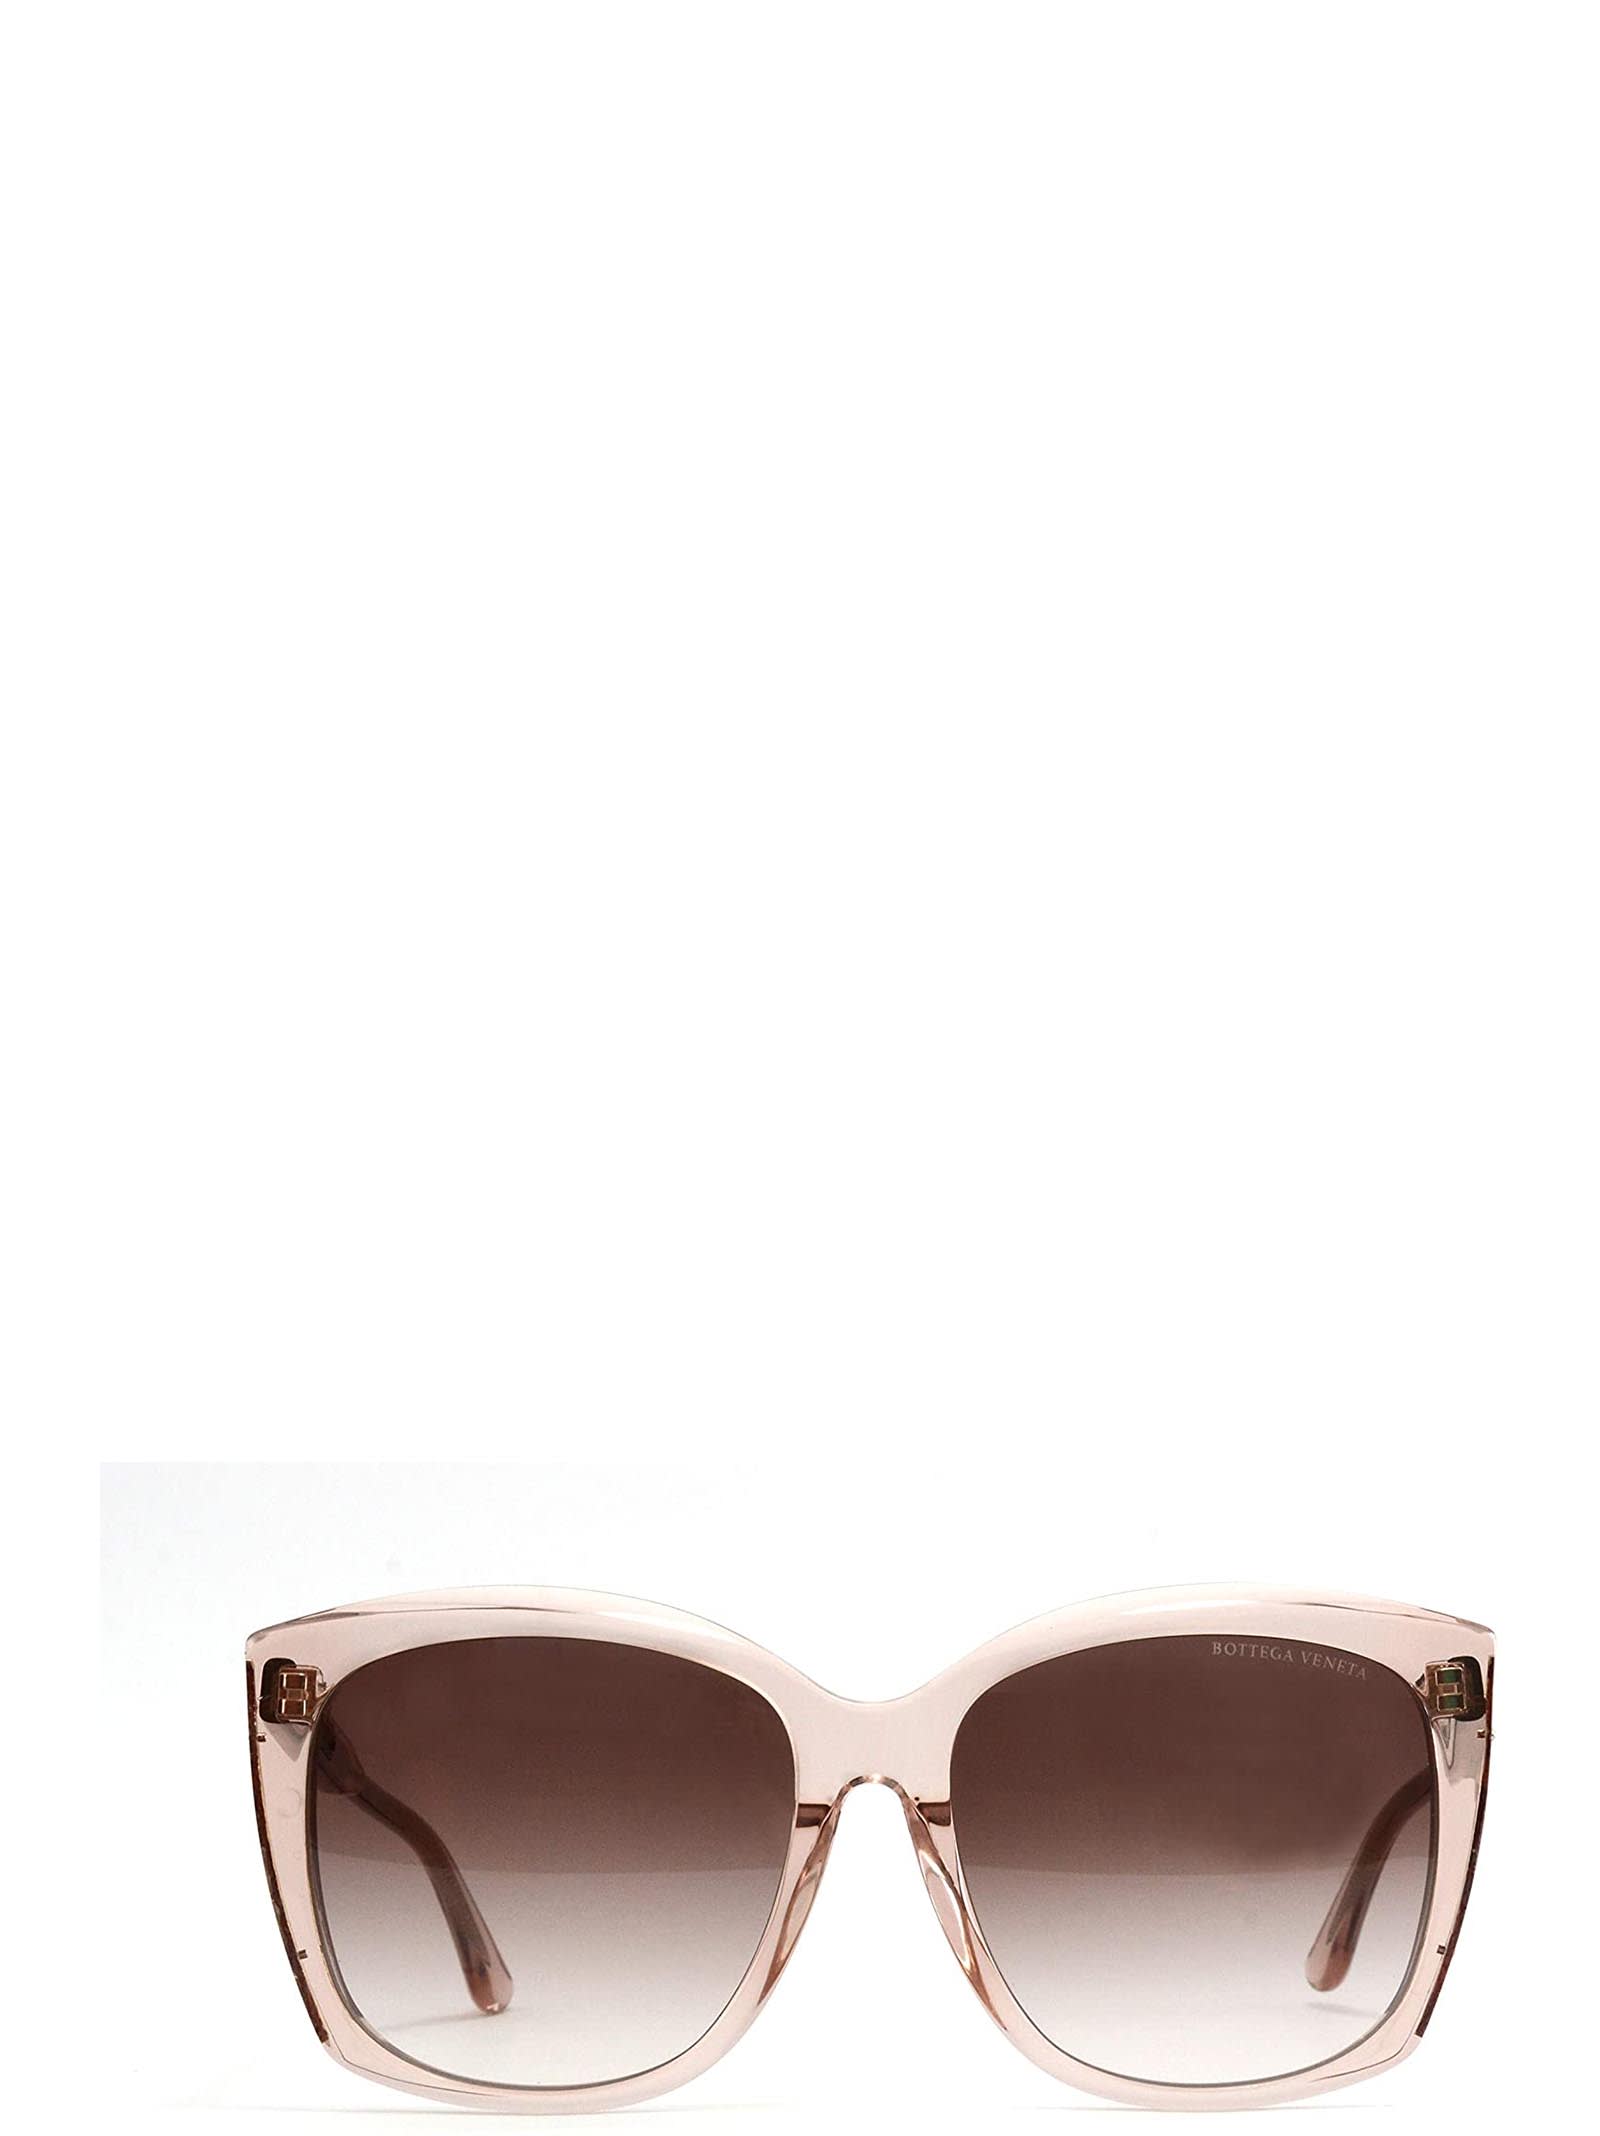 Bottega Veneta Bottega Veneta Bv0182s Transparent Pink Sunglasses